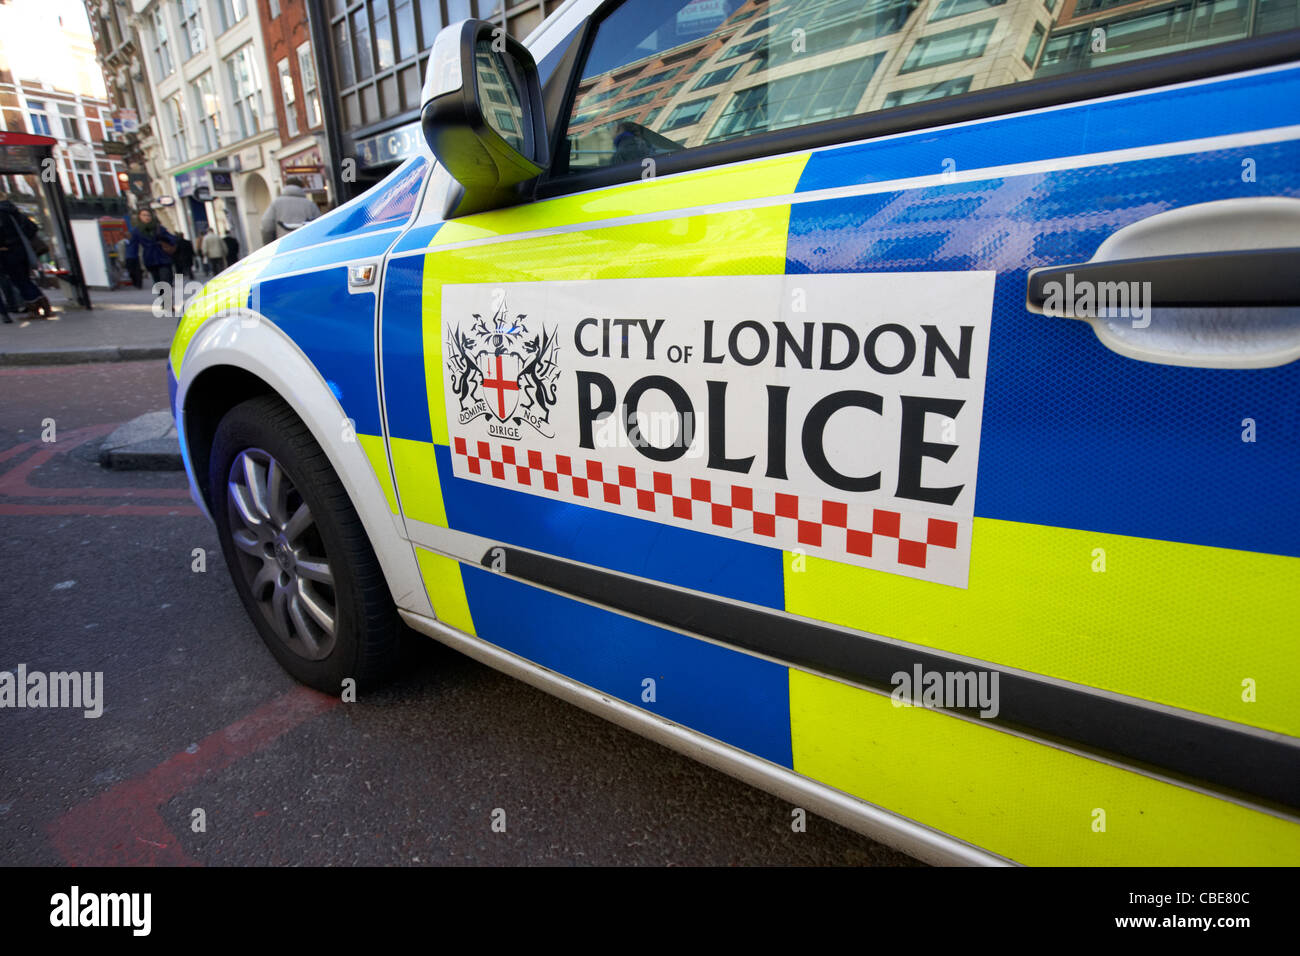 City of London Police veicolo England Regno Unito Regno Unito Foto Stock